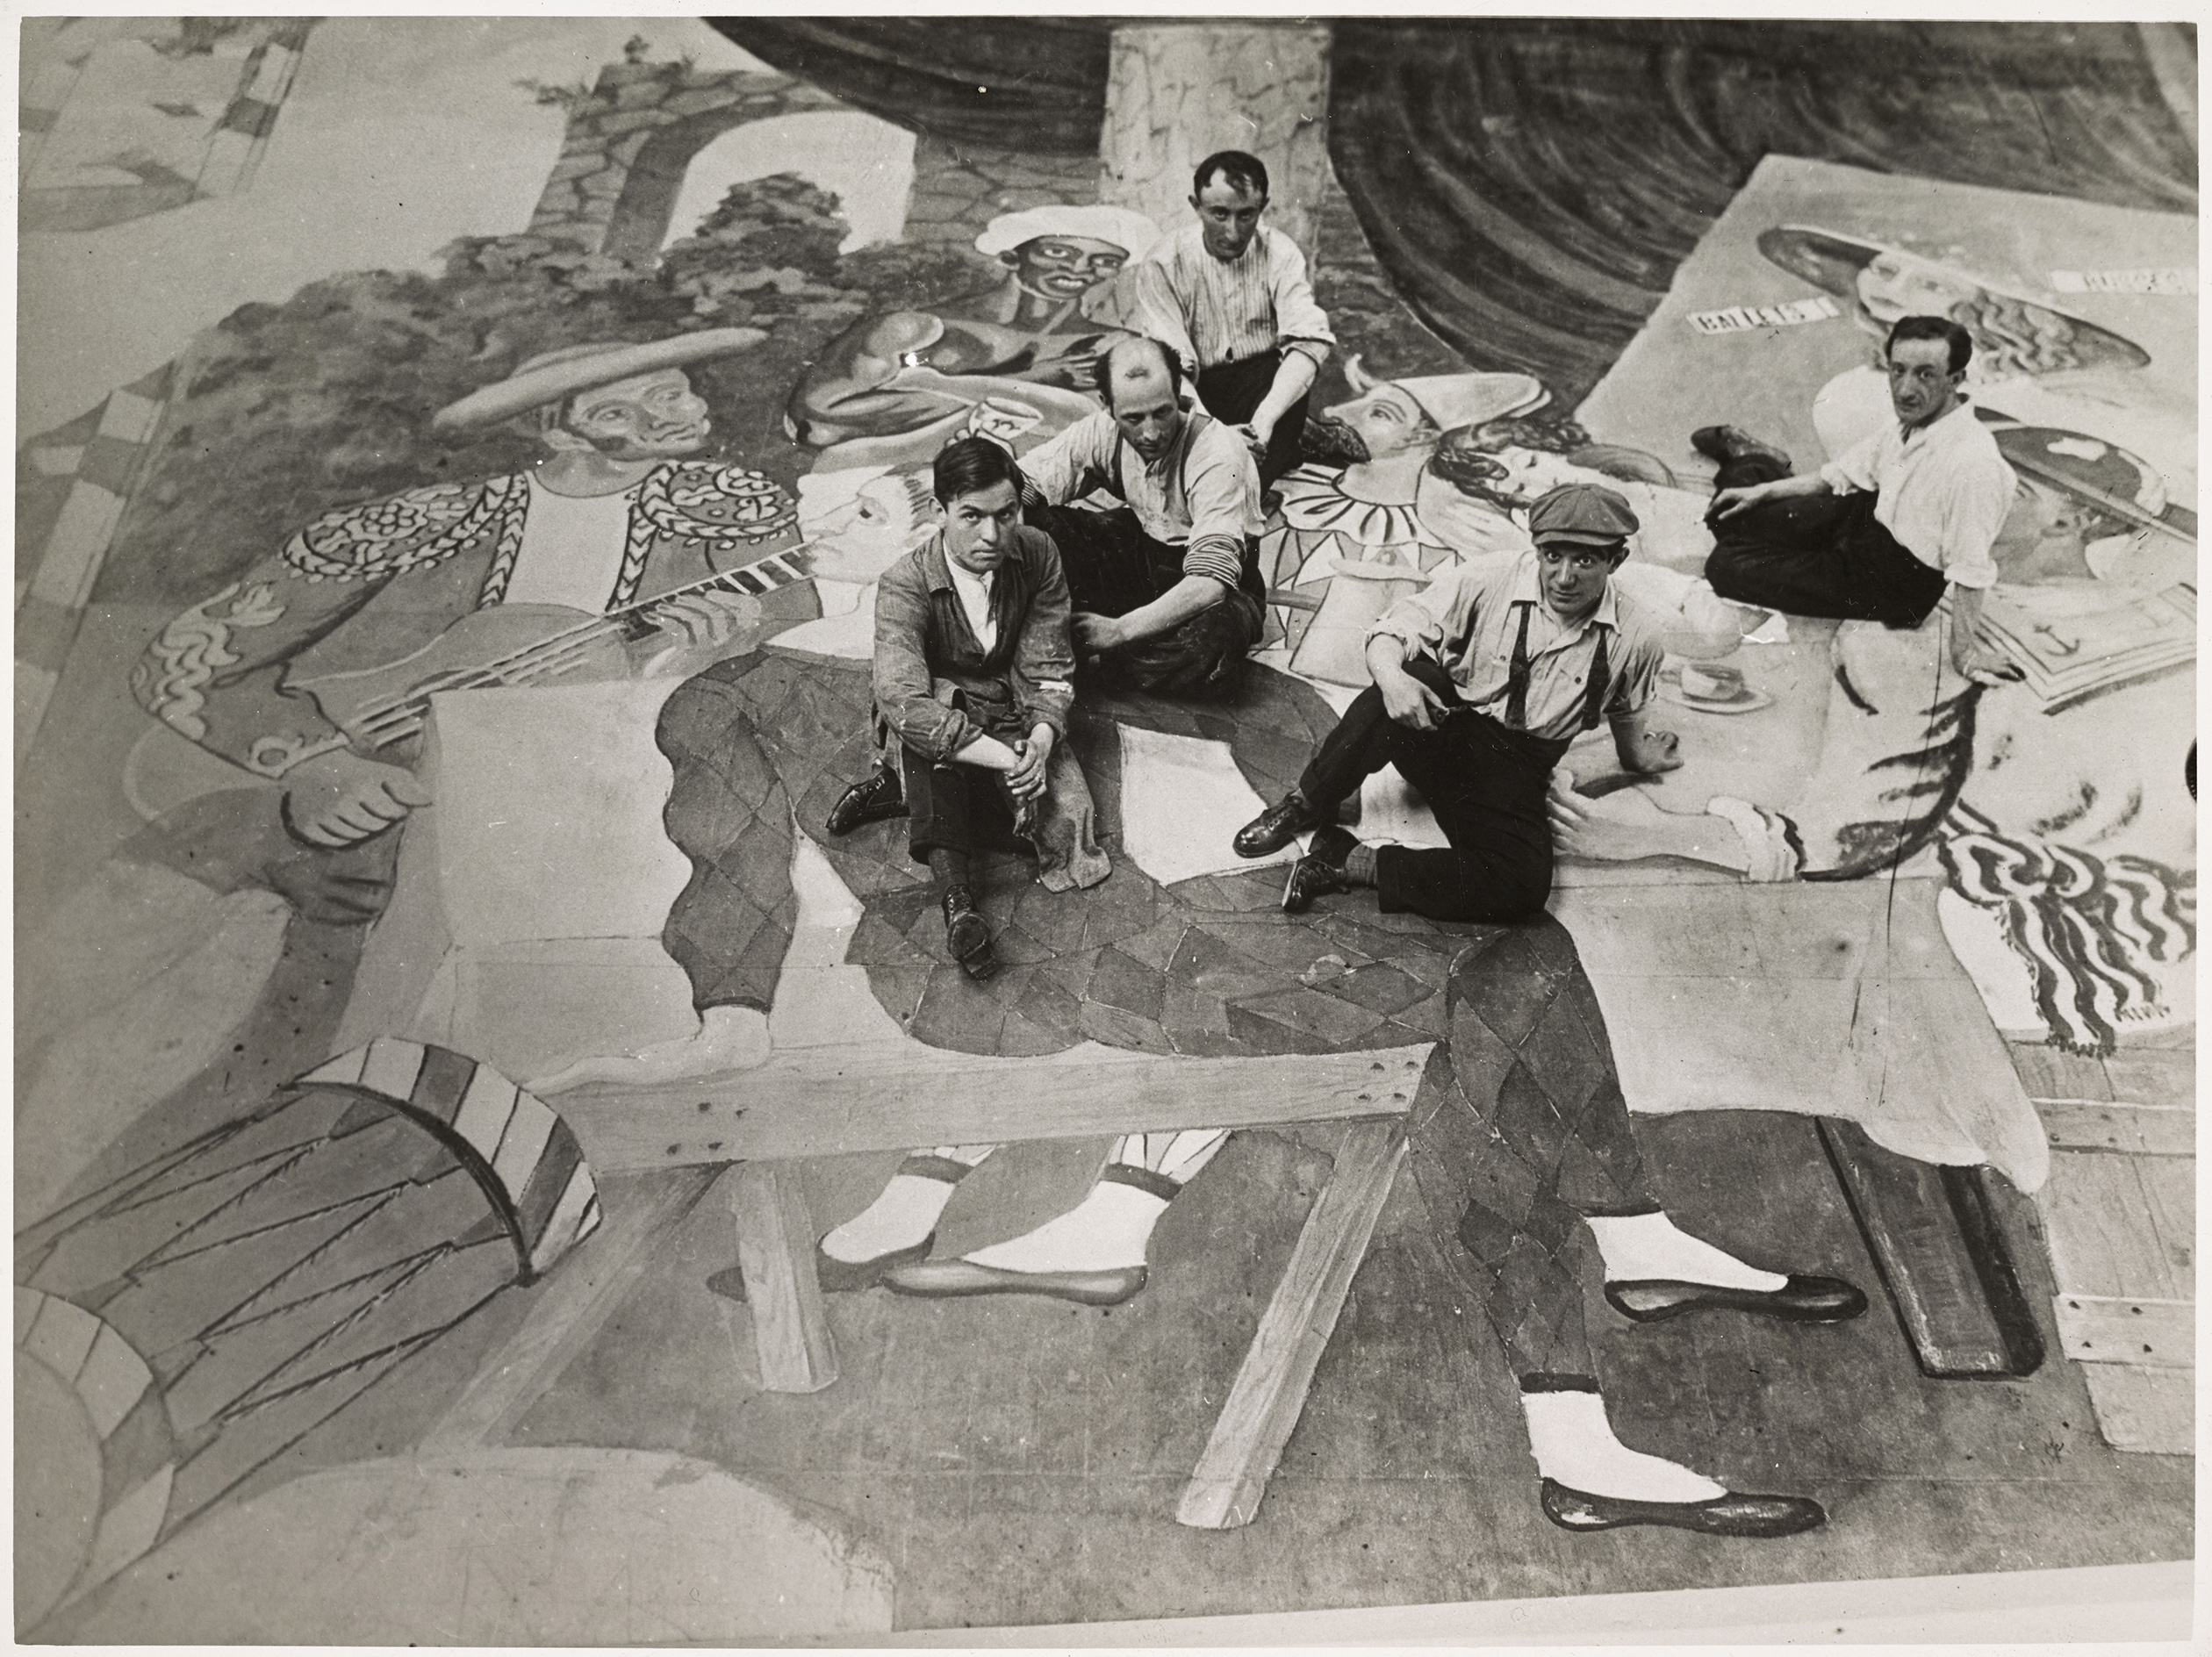 Dora Maar - Reproduction de la photographie de Harry B. Lachman (attribué à) : Pablo Picasso et ses assistants assis sur le rideau de scène "Parade" en cours d'exécution à Montparnasse - MP1998-144 -18-542472